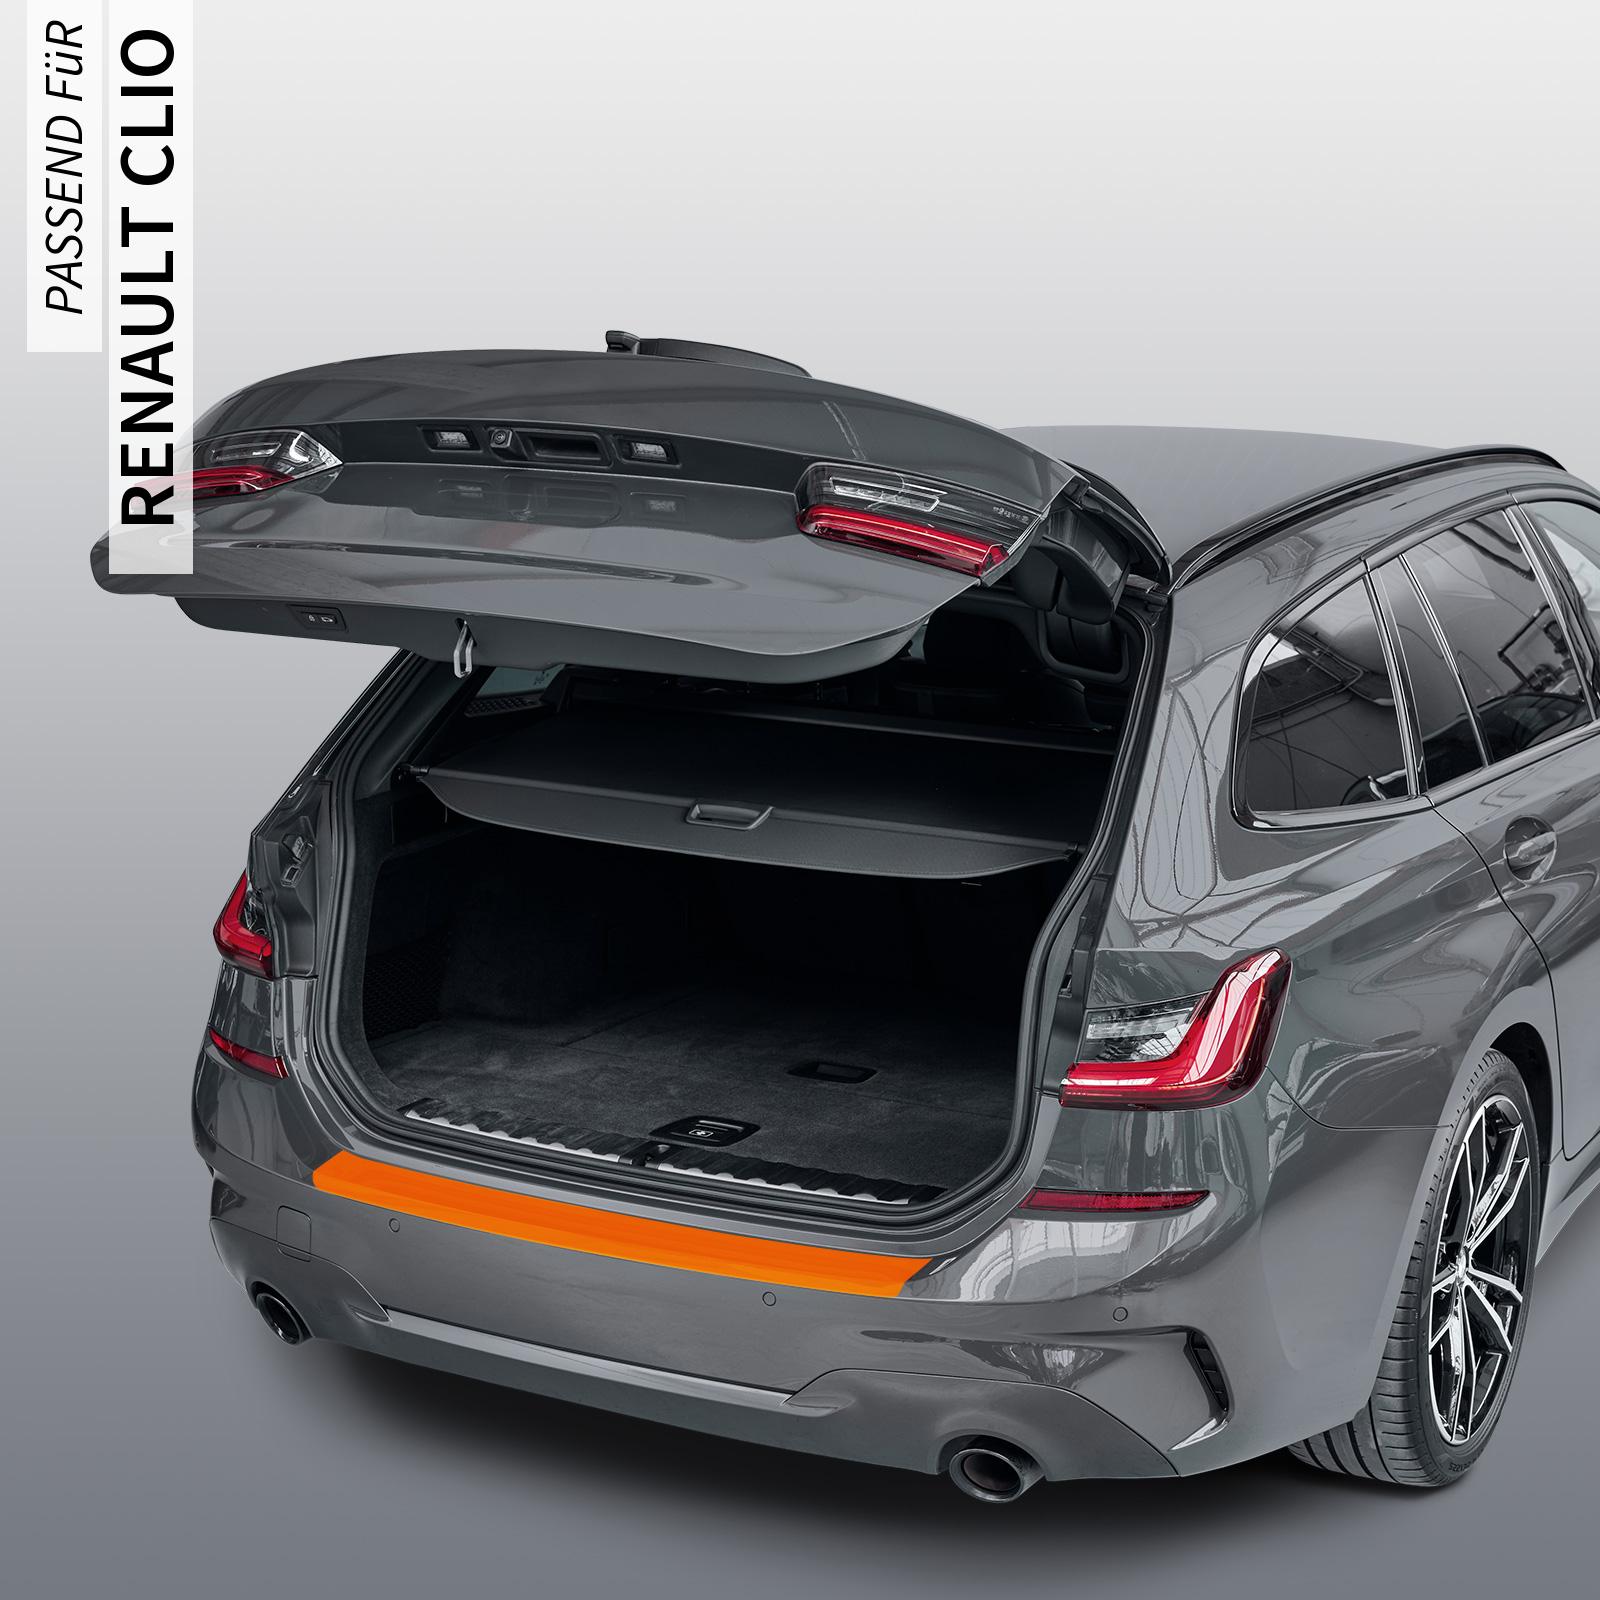 Ladekantenschutzfolie - Transparent Glatt MATT 110 µm stark  für Renault Clio (III) Typ R, ab BJ 2006-2012